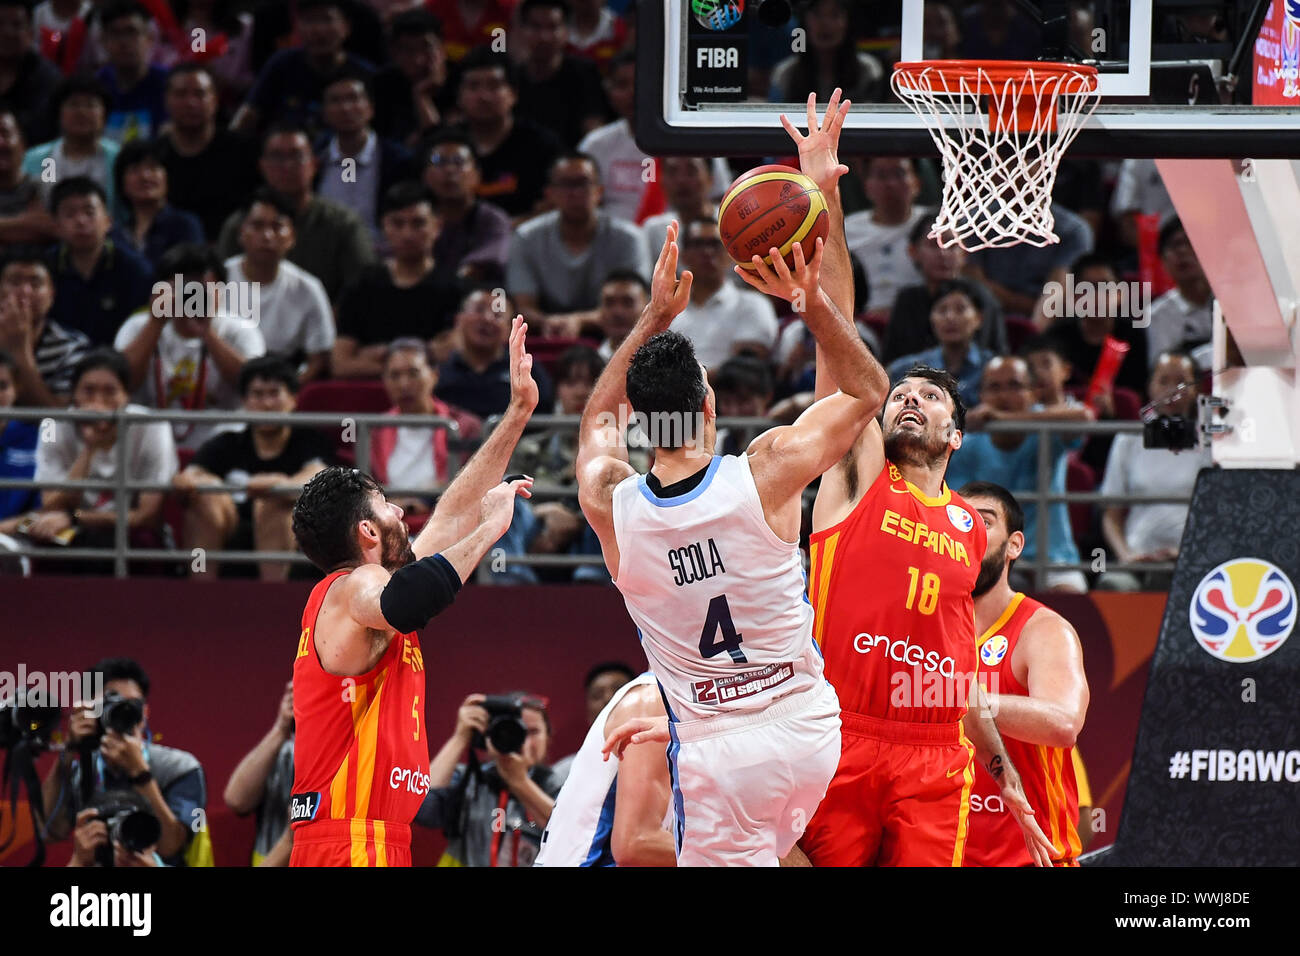 Luis Scola, blanc, sauts de score à l'Espagne contre l'Argentine de basket-ball  FIBA 2019 finale de la Coupe du Monde de Beijing, Chine, 15 septembre 2019.  L'Espagne a battu l'Argentine en 2019